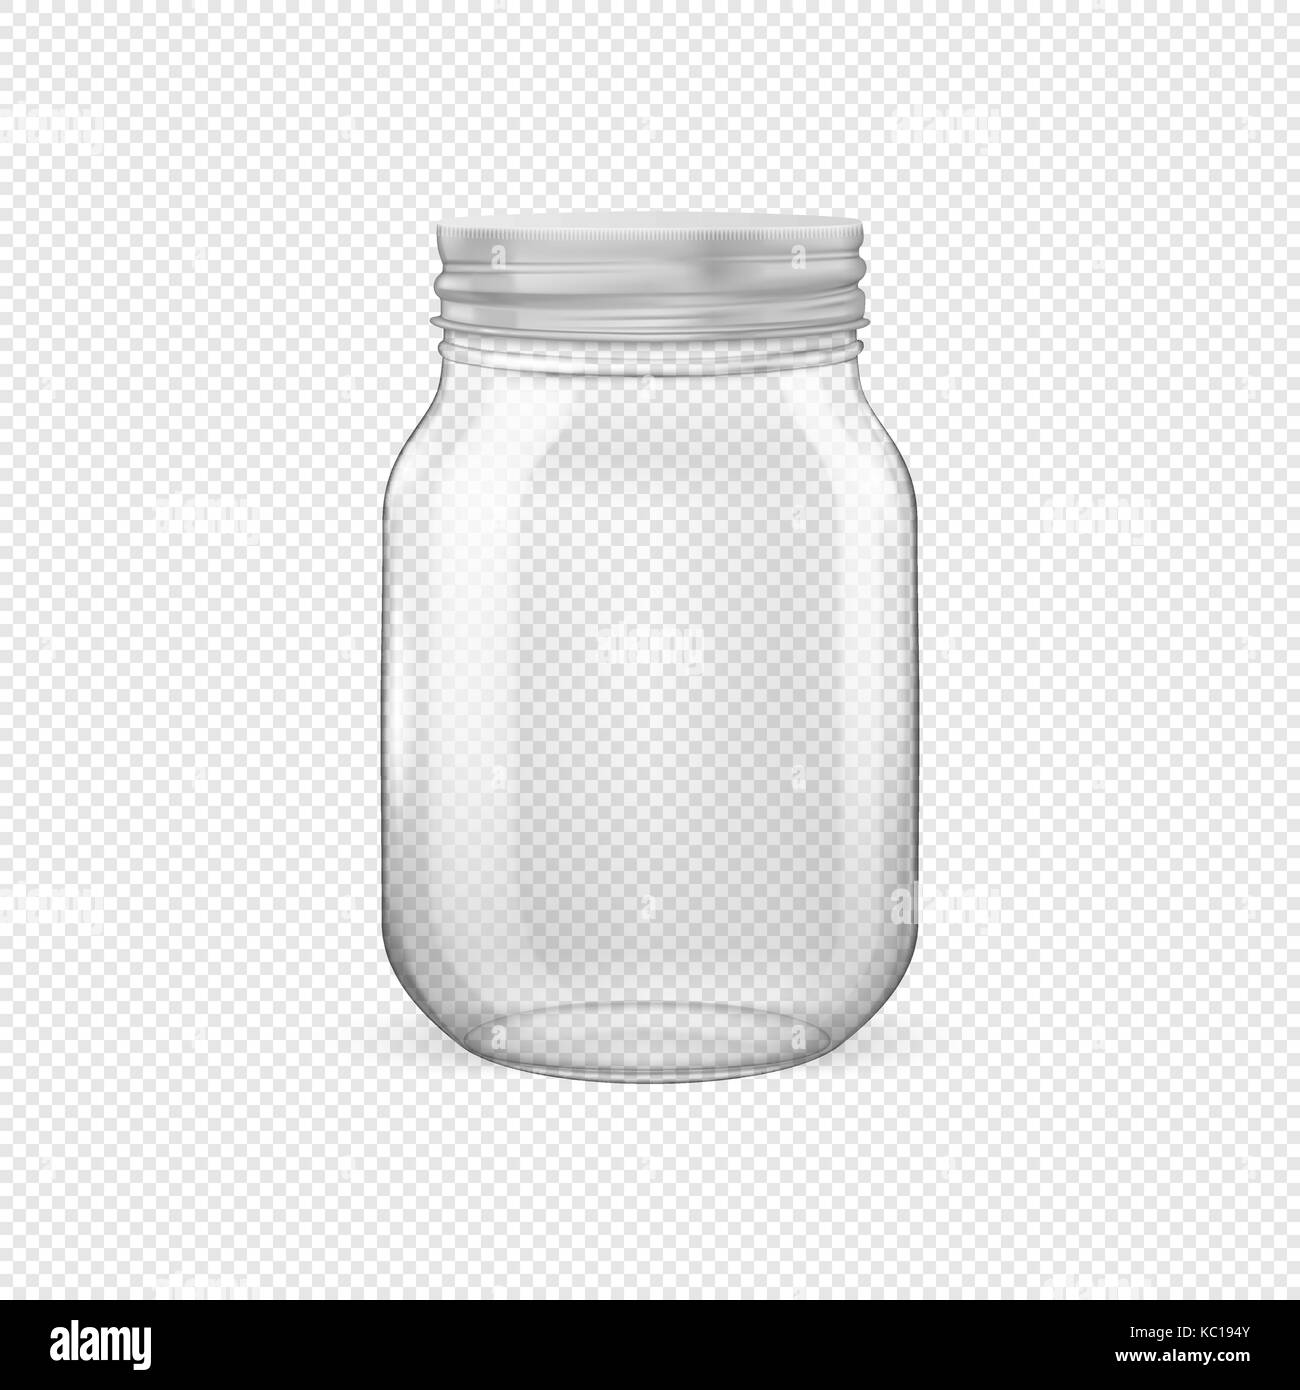 Vektor realistische leere Glasflasche für Konservierung mit silbernen Deckel closeup auf Transparenten Hintergrund isoliert. Design Template für Werbung, Branding, mockup. EPS 10. Stock Vektor